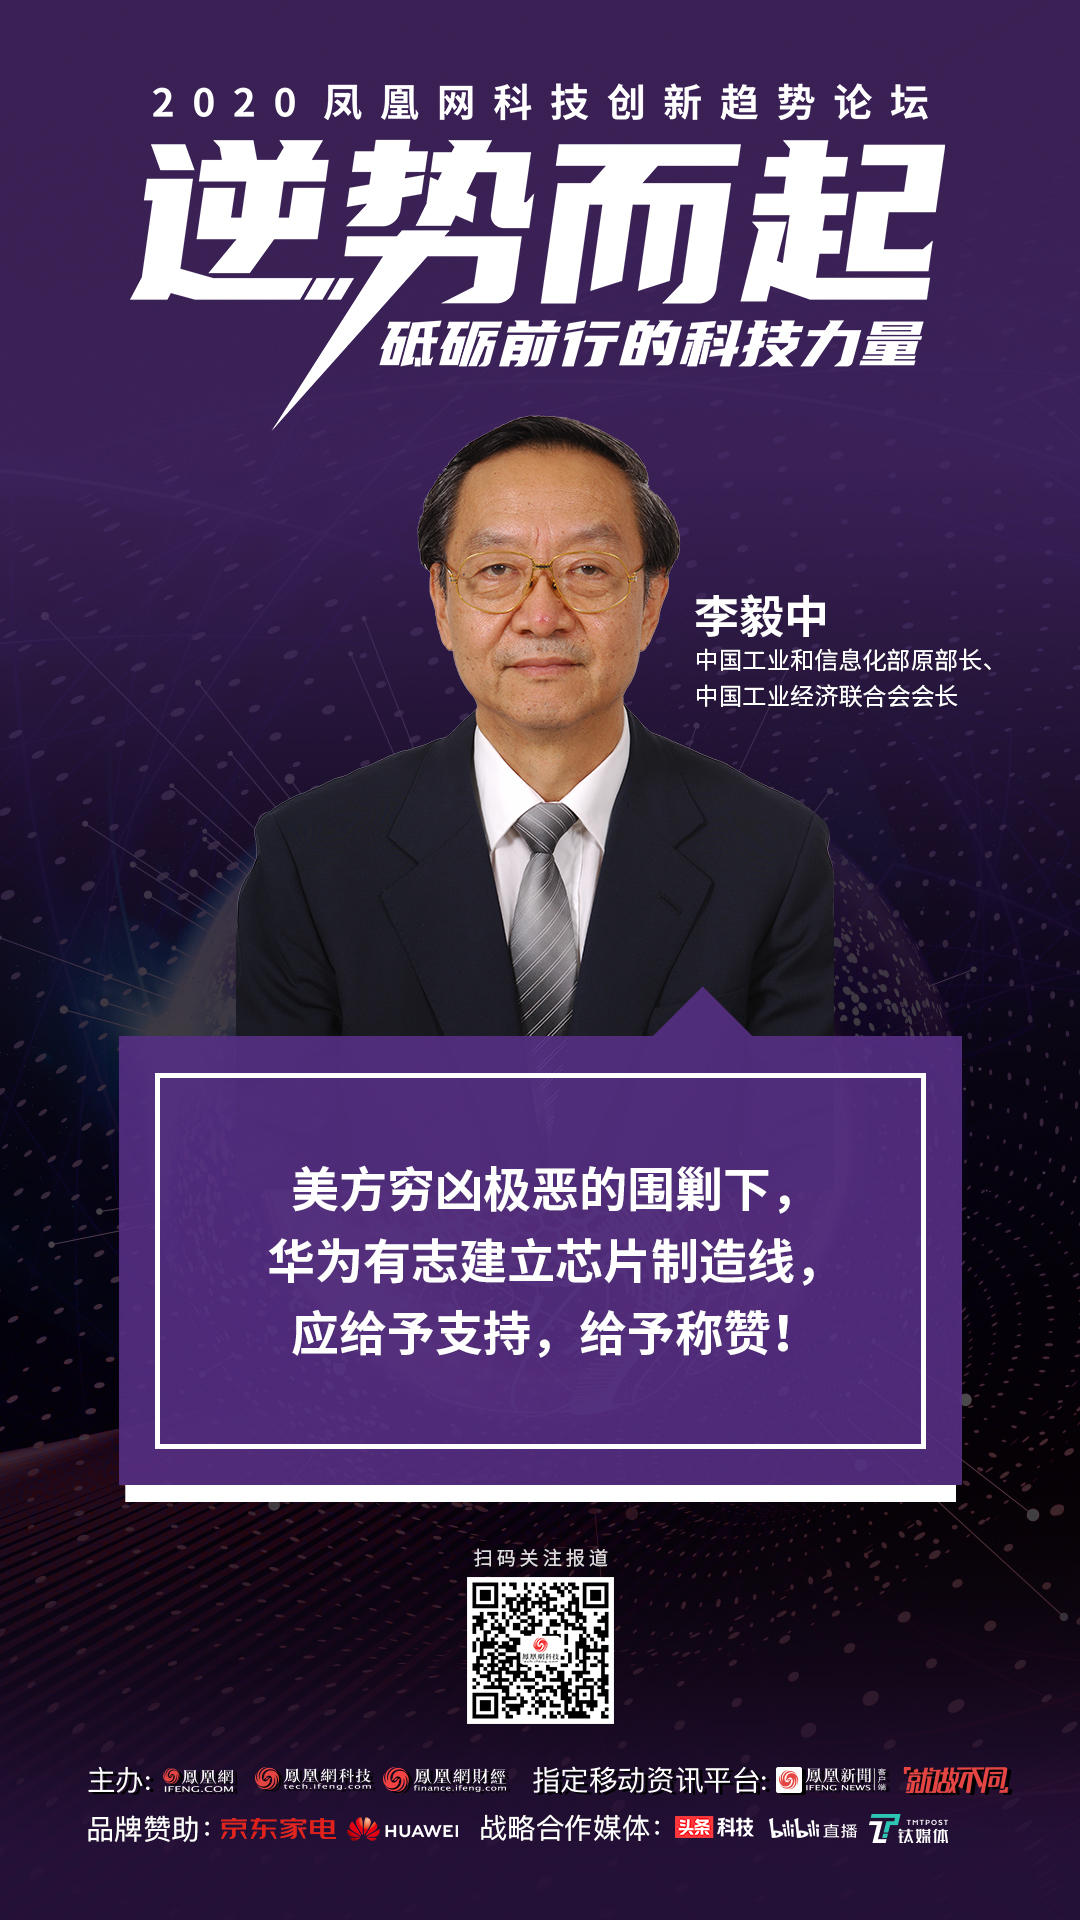 李毅中 中国工业和信息化部原部长,中国工业经济联合会会长